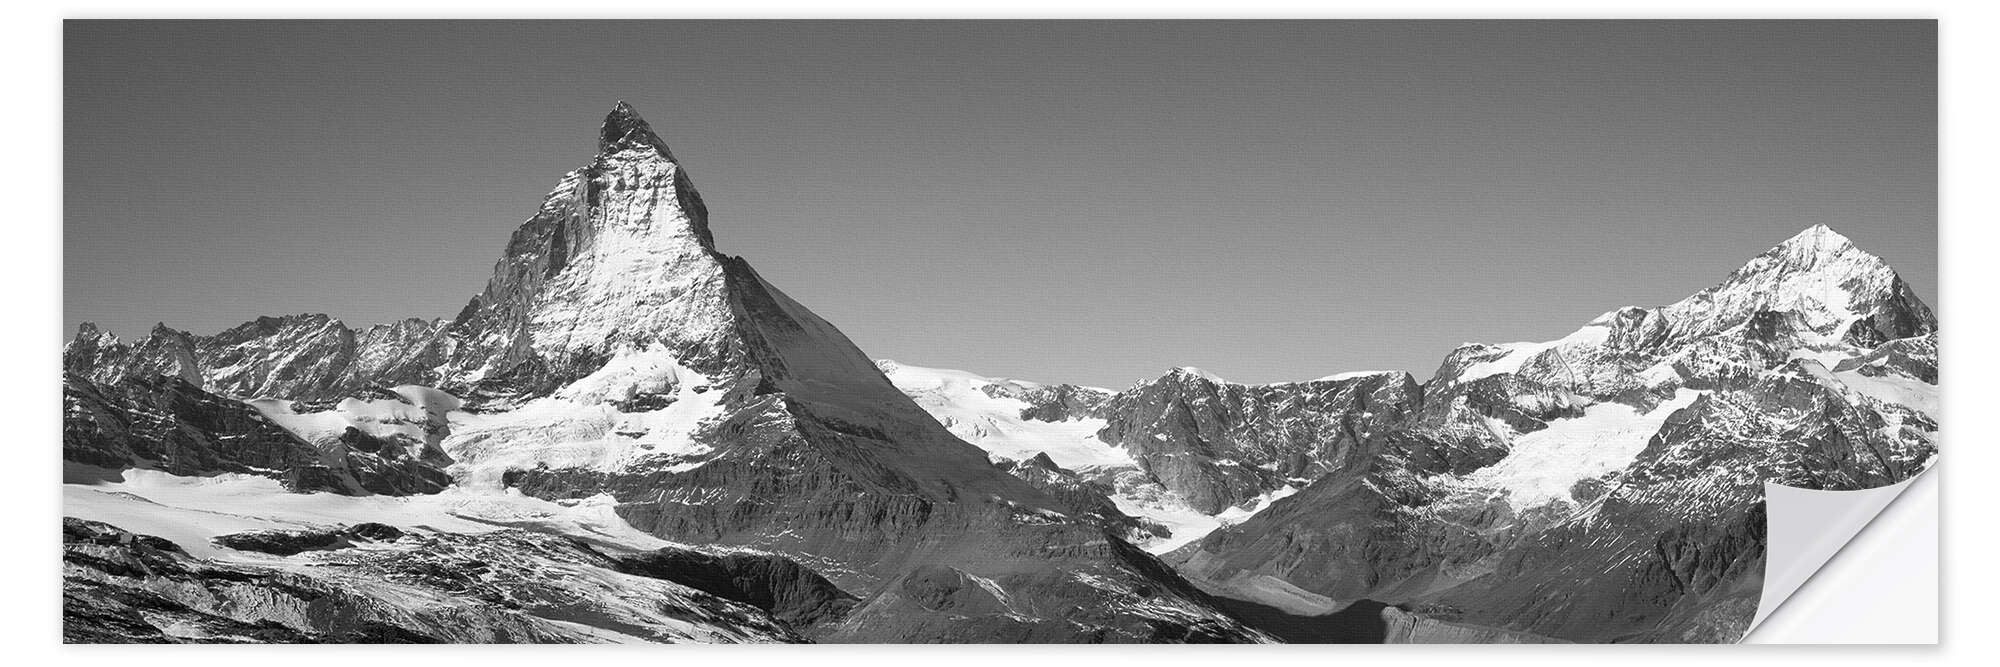 Posterlounge Wandfolie Panoramic Images, Matterhorn Schweiz, Fotografie